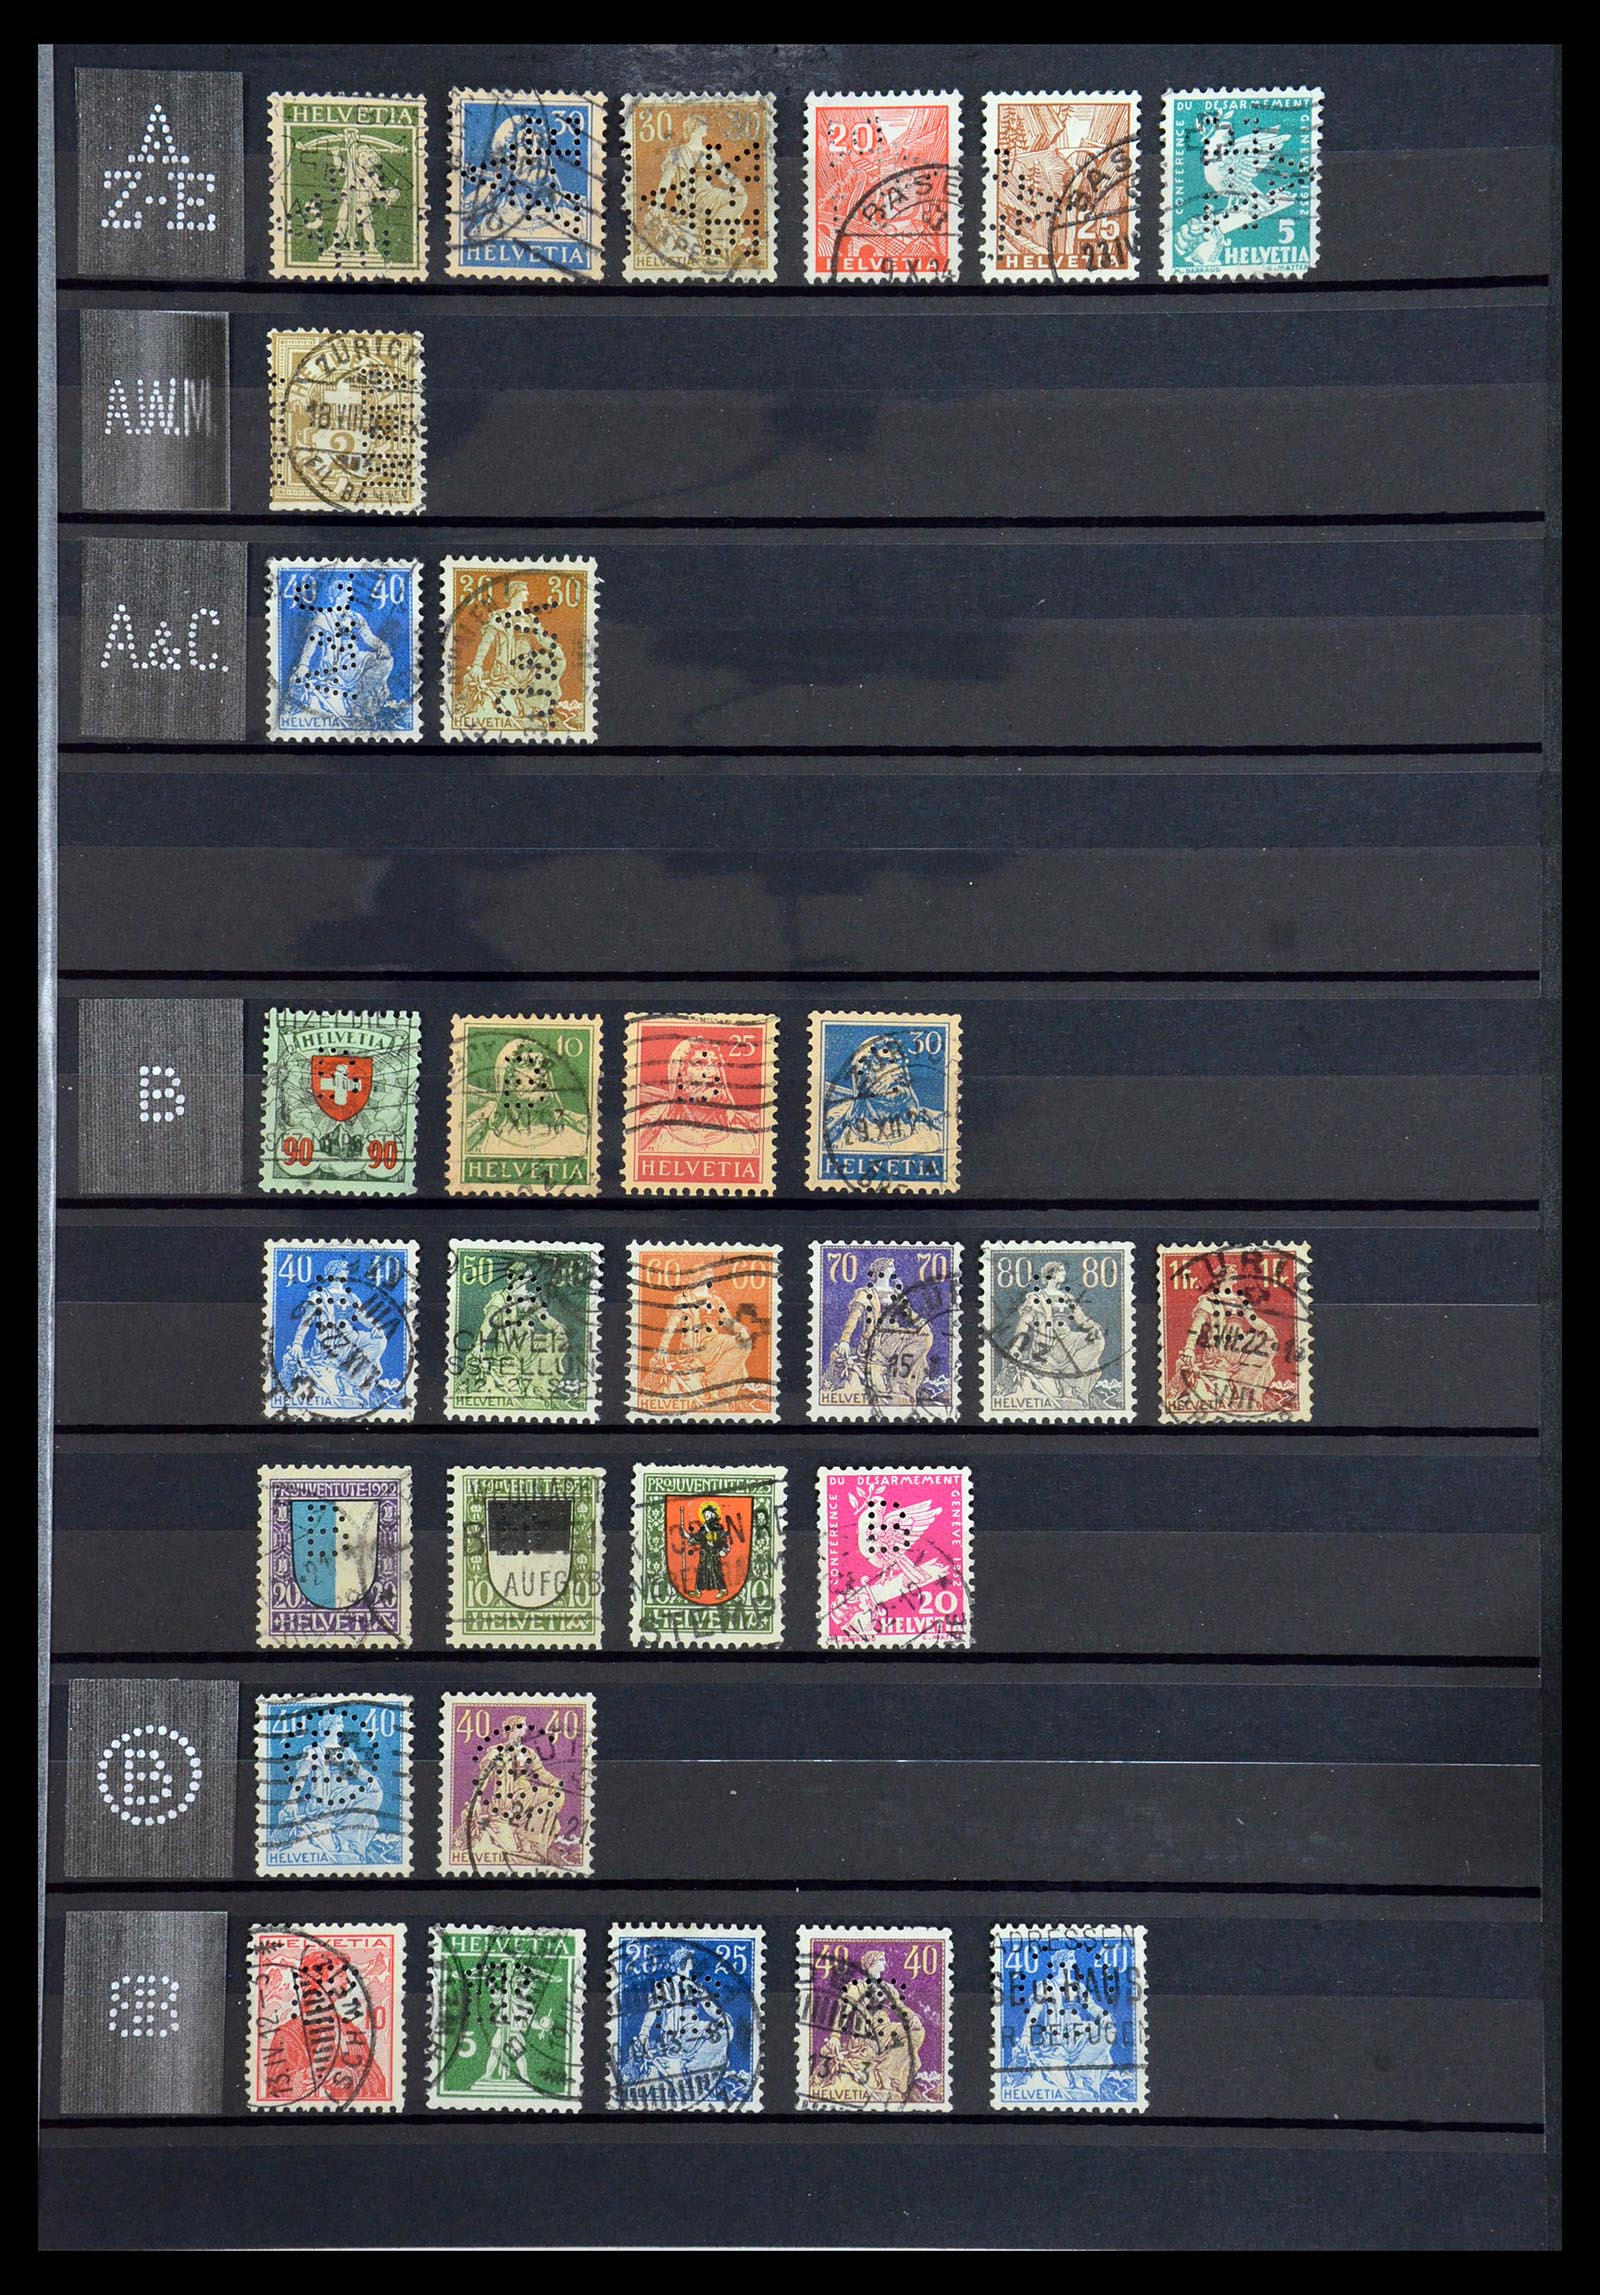 36372 003 - Stamp collection 36372 Switzerland perfins 1880-1960.